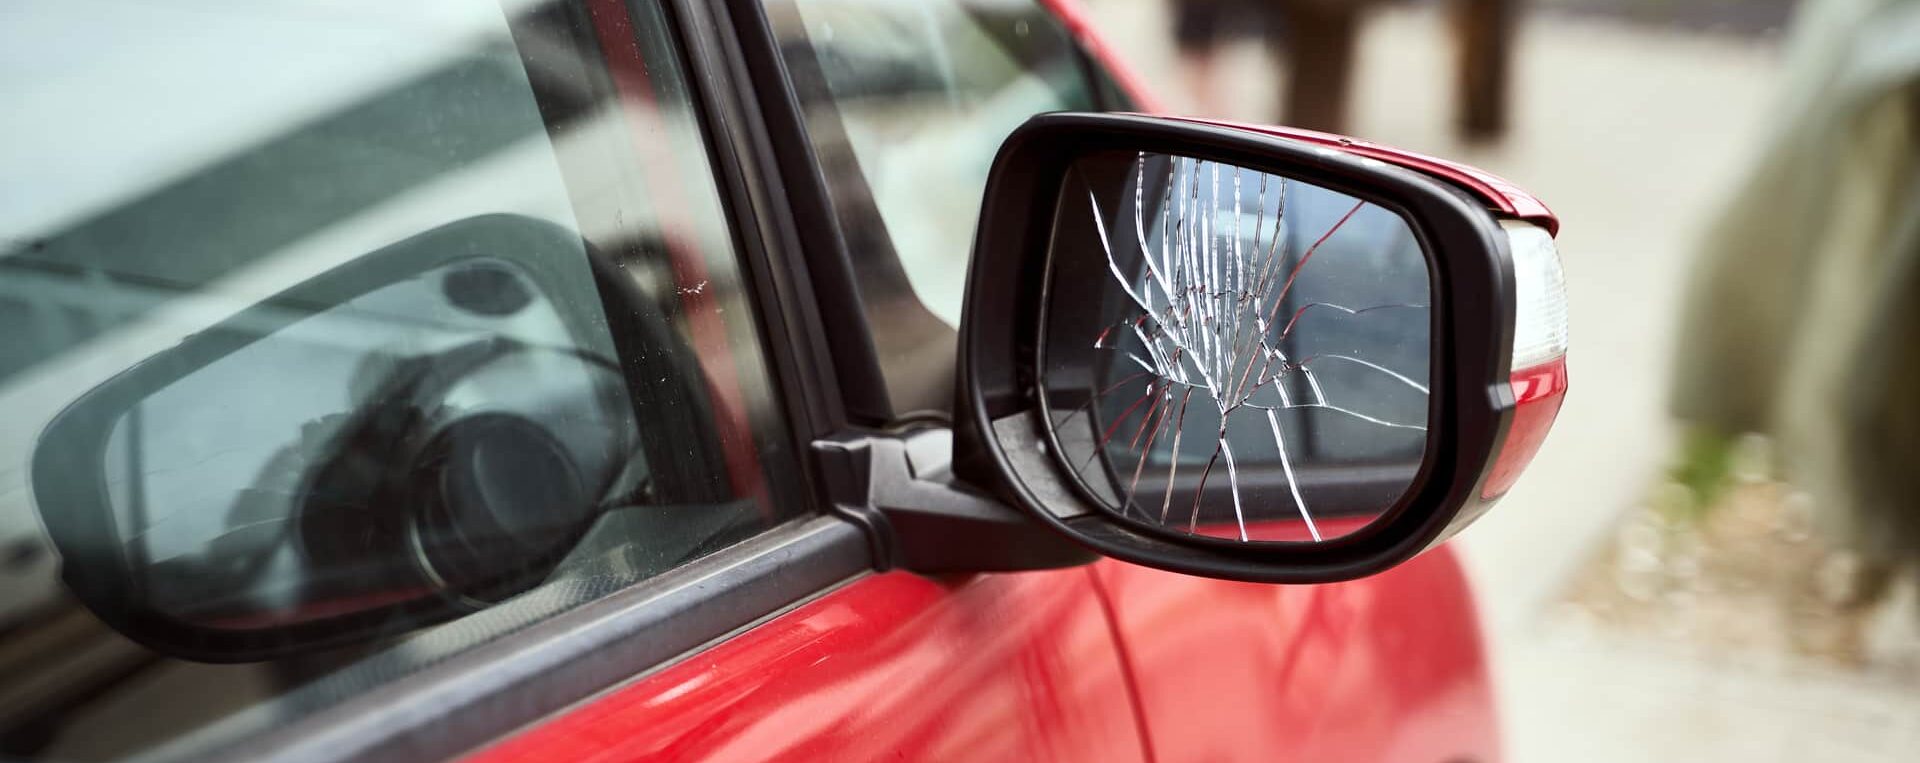 Car with broken side mirror